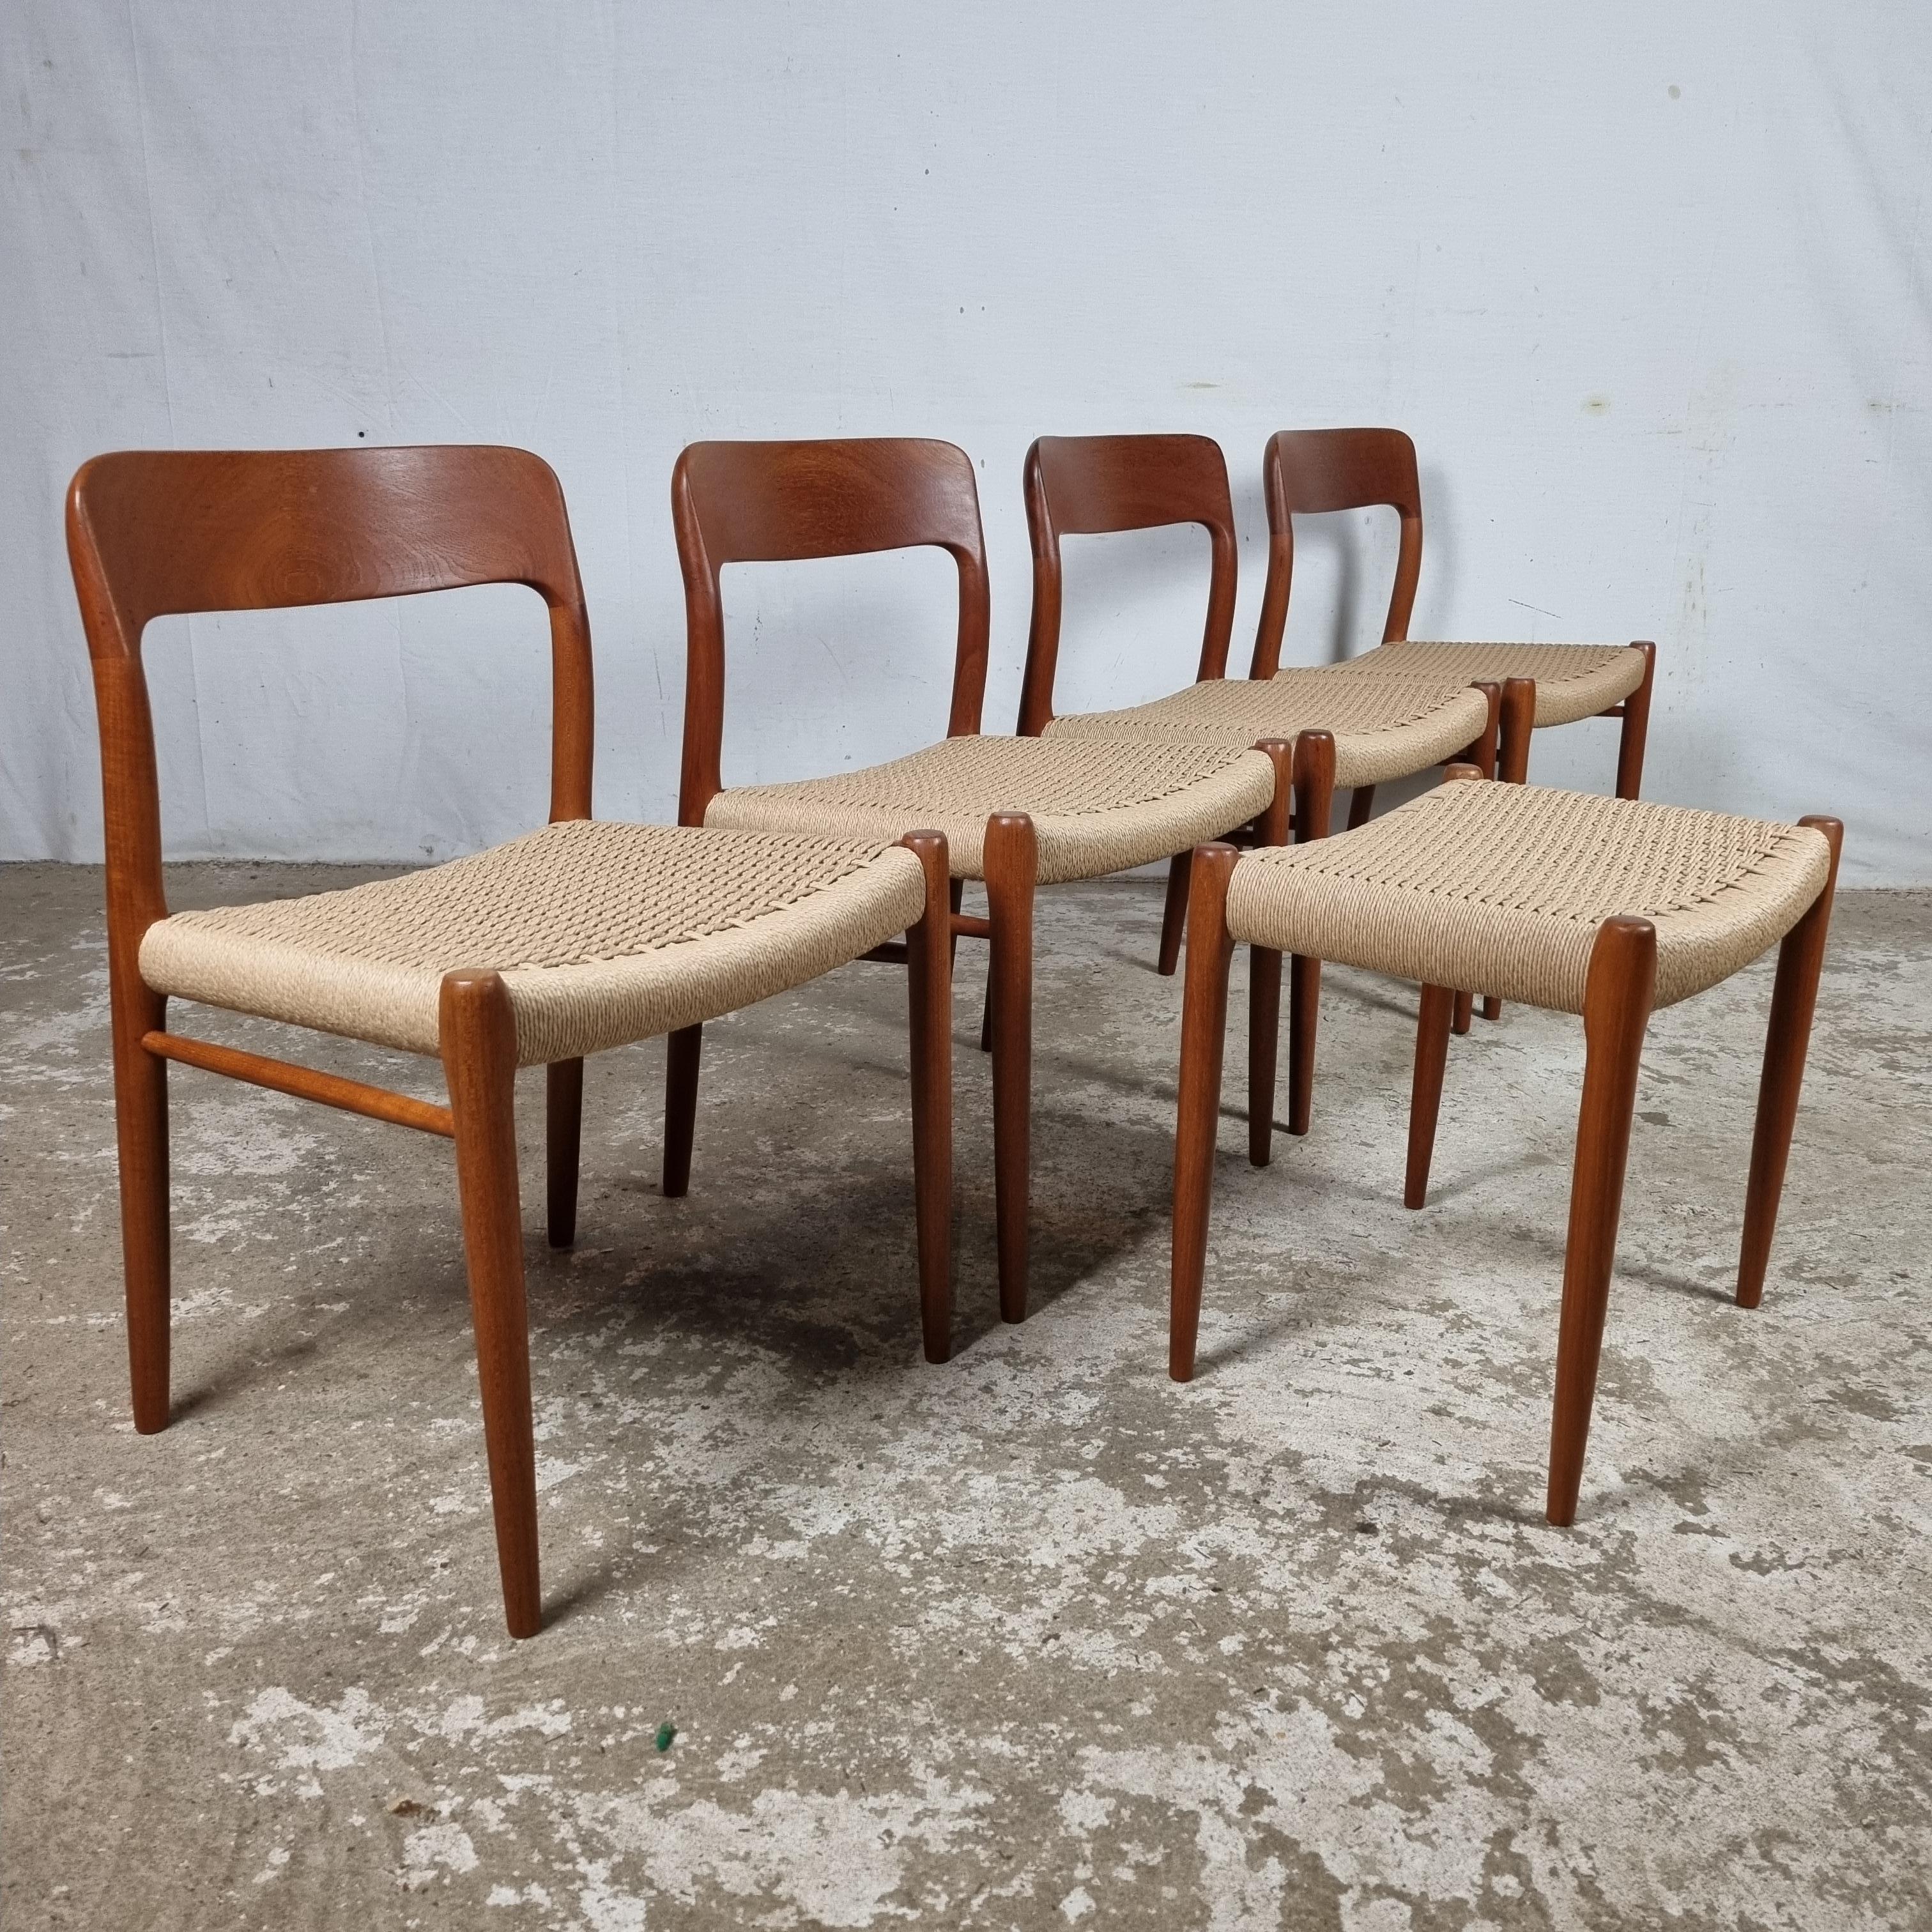 Design/One de haute qualité datant des années 1960. Une création de Niels Otto Møller, pour sa boutique J.L.A. Usine Møller à Hojbjerg, Denmark🇩🇰.

Ce modèle particulier no. 75 a été conçu en 1954. 

Les 4 chaises sont d'anciennes productions